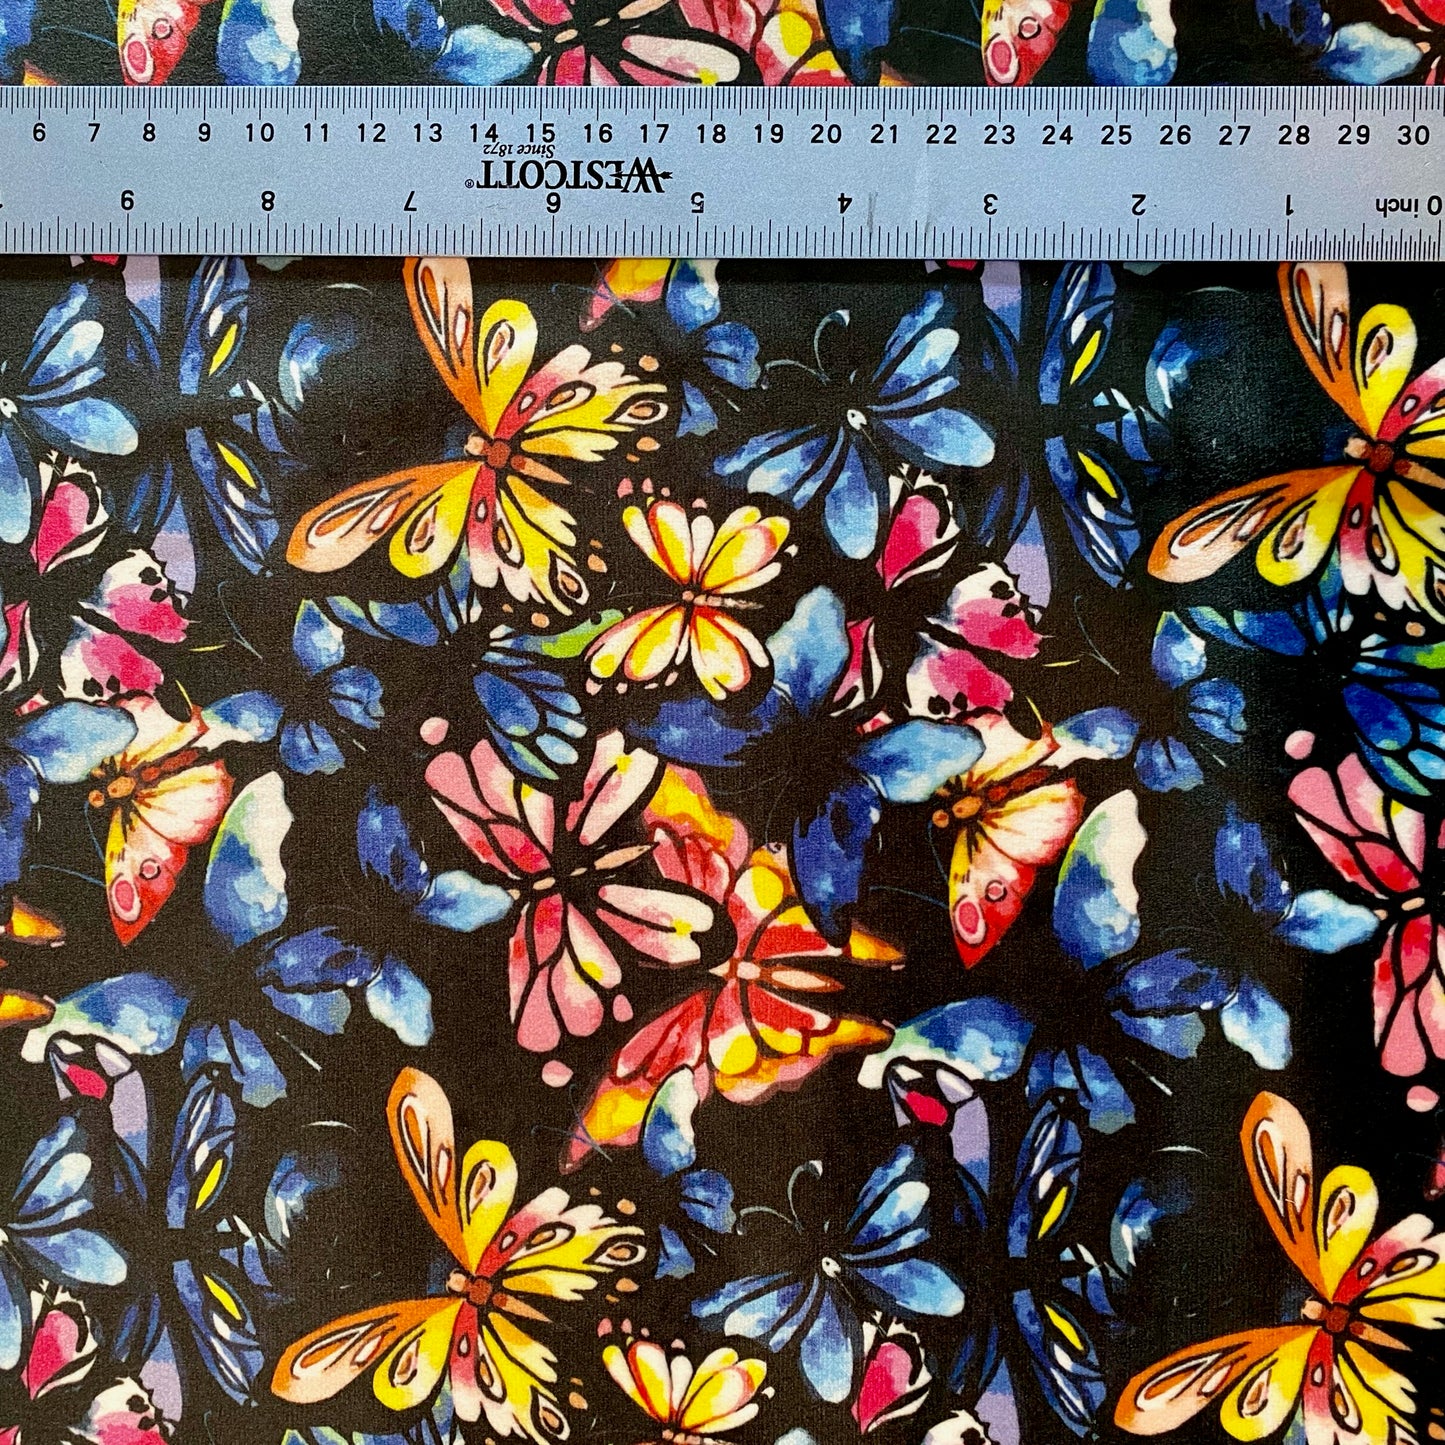 Beautiful Butterflies in Watercolor Velvet